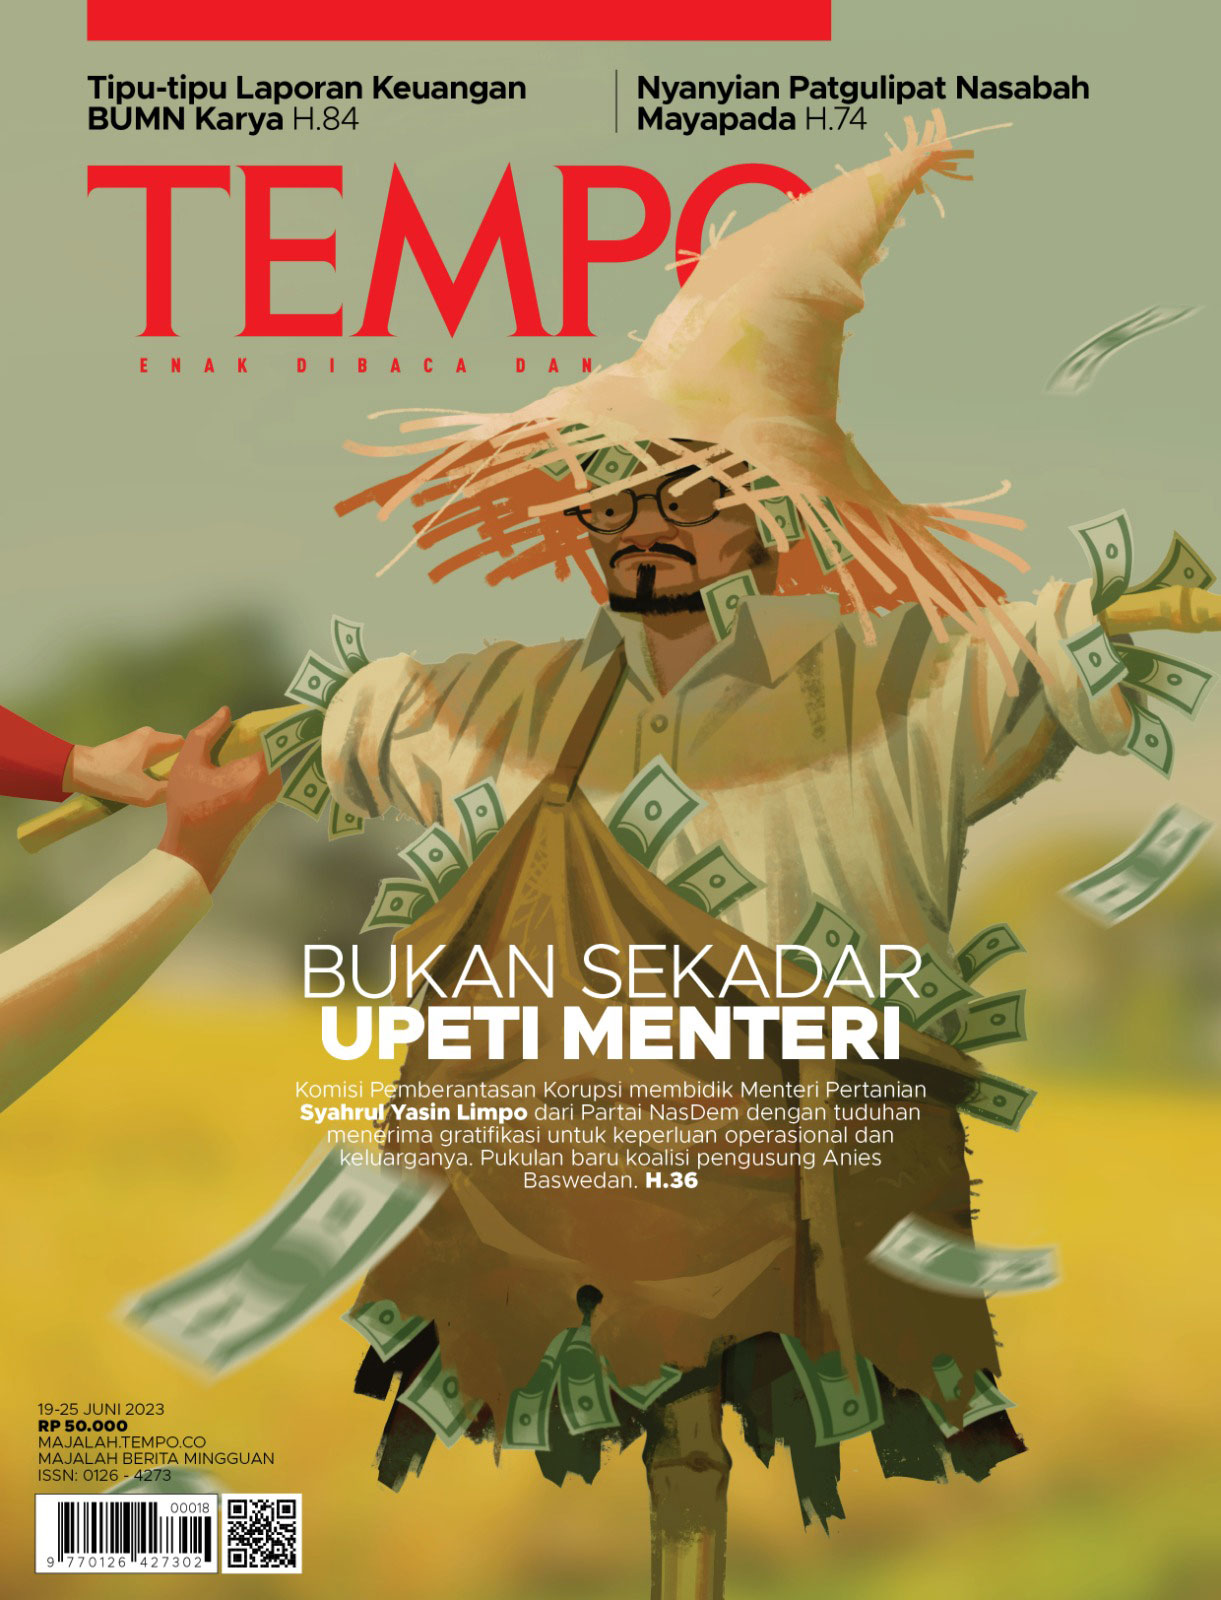 Edisi Minggu 18 Juni 2023 Majalah Tempo Co